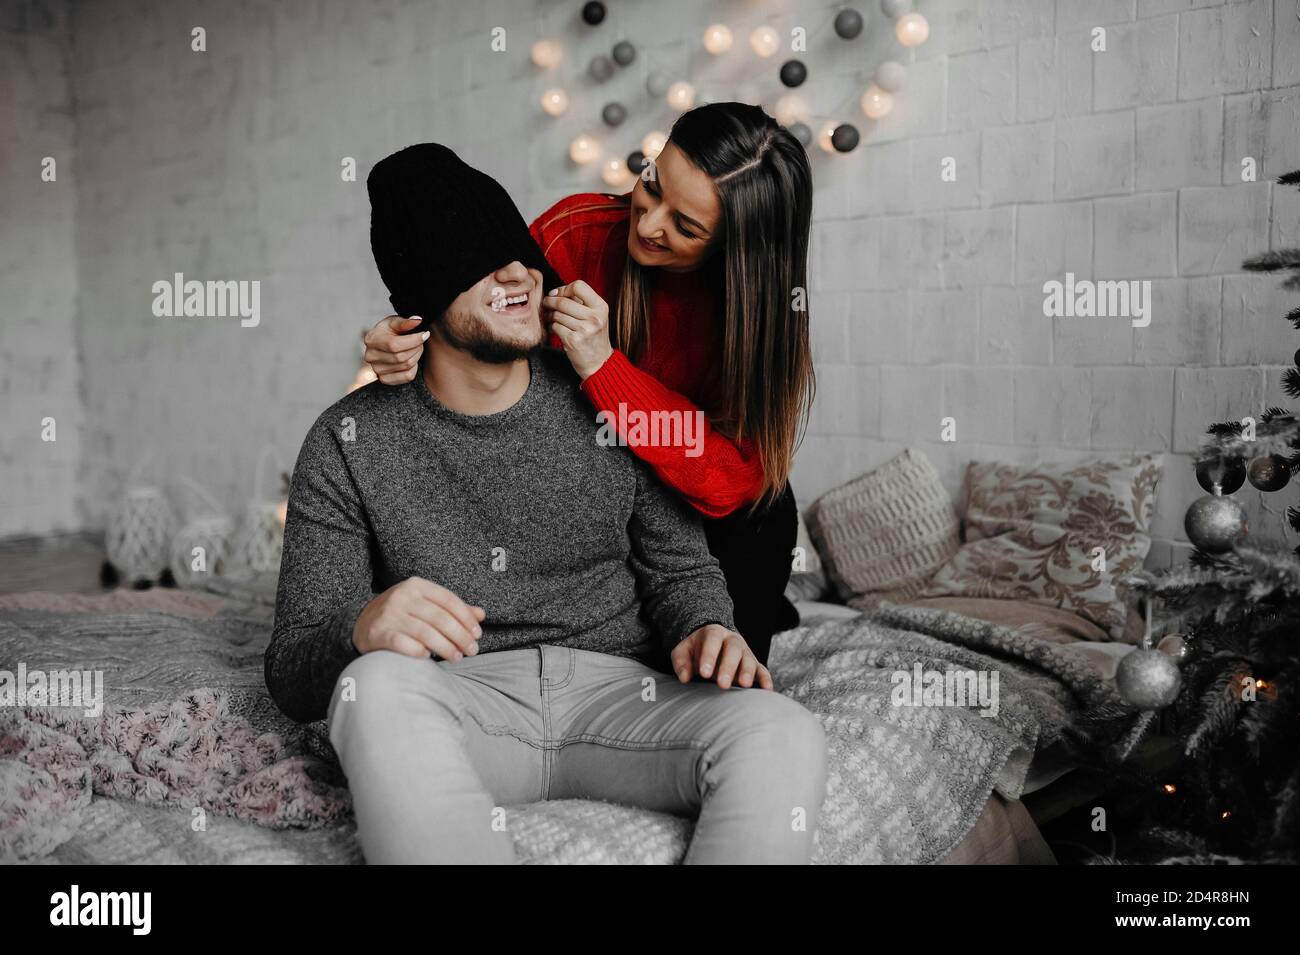 Glücklich liebende Paar genießen Weihnachten Spaß zusammen auf einem bequemen Bett. Schöne kaukasische Paar lachen Zweisamkeit in gemütlichen Raum zu Hause Stockfoto